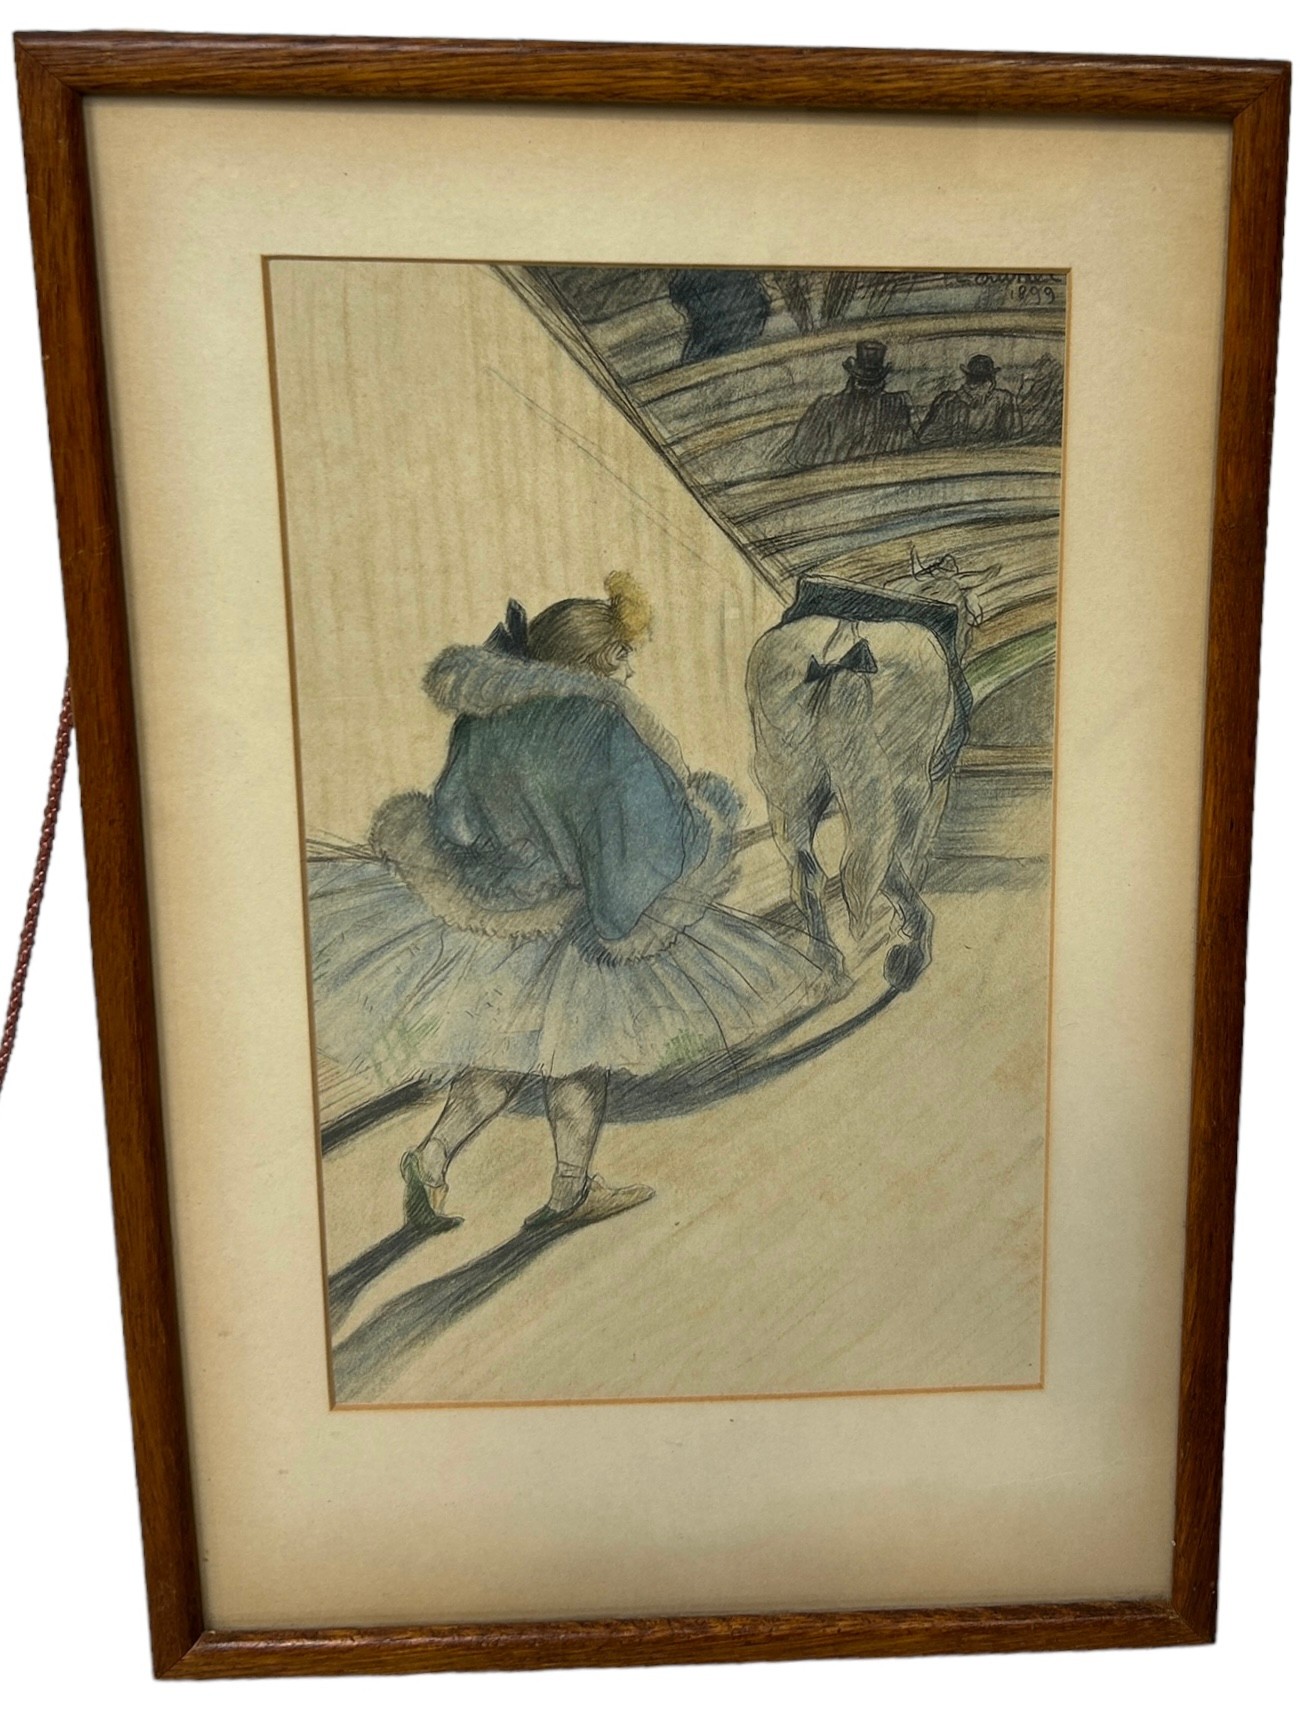 AFTER HENRI DE TOULOUSE-LAUTREC: A THEATRICAL PRINT DEPICTING A LADY BEHIND A HORSE, 27cm x 16cm